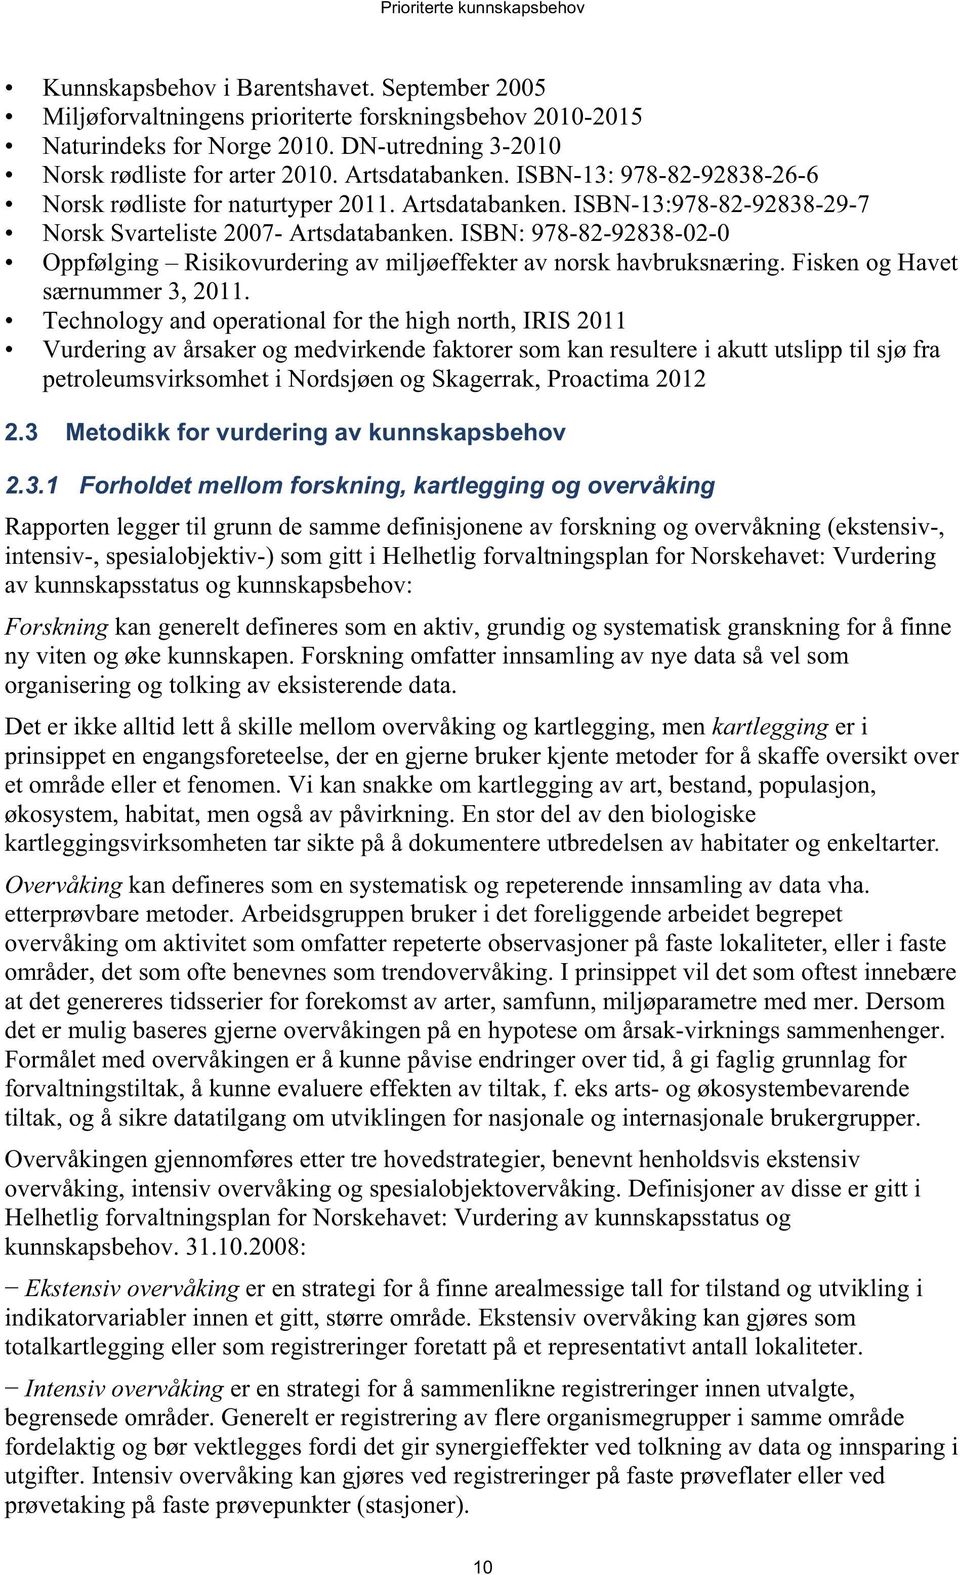 ISBN: 978-82-92838-02-0 Oppfølging Risikovurdering av miljøeffekter av norsk havbruksnæring. Fisken og Havet særnummer 3, 2011.